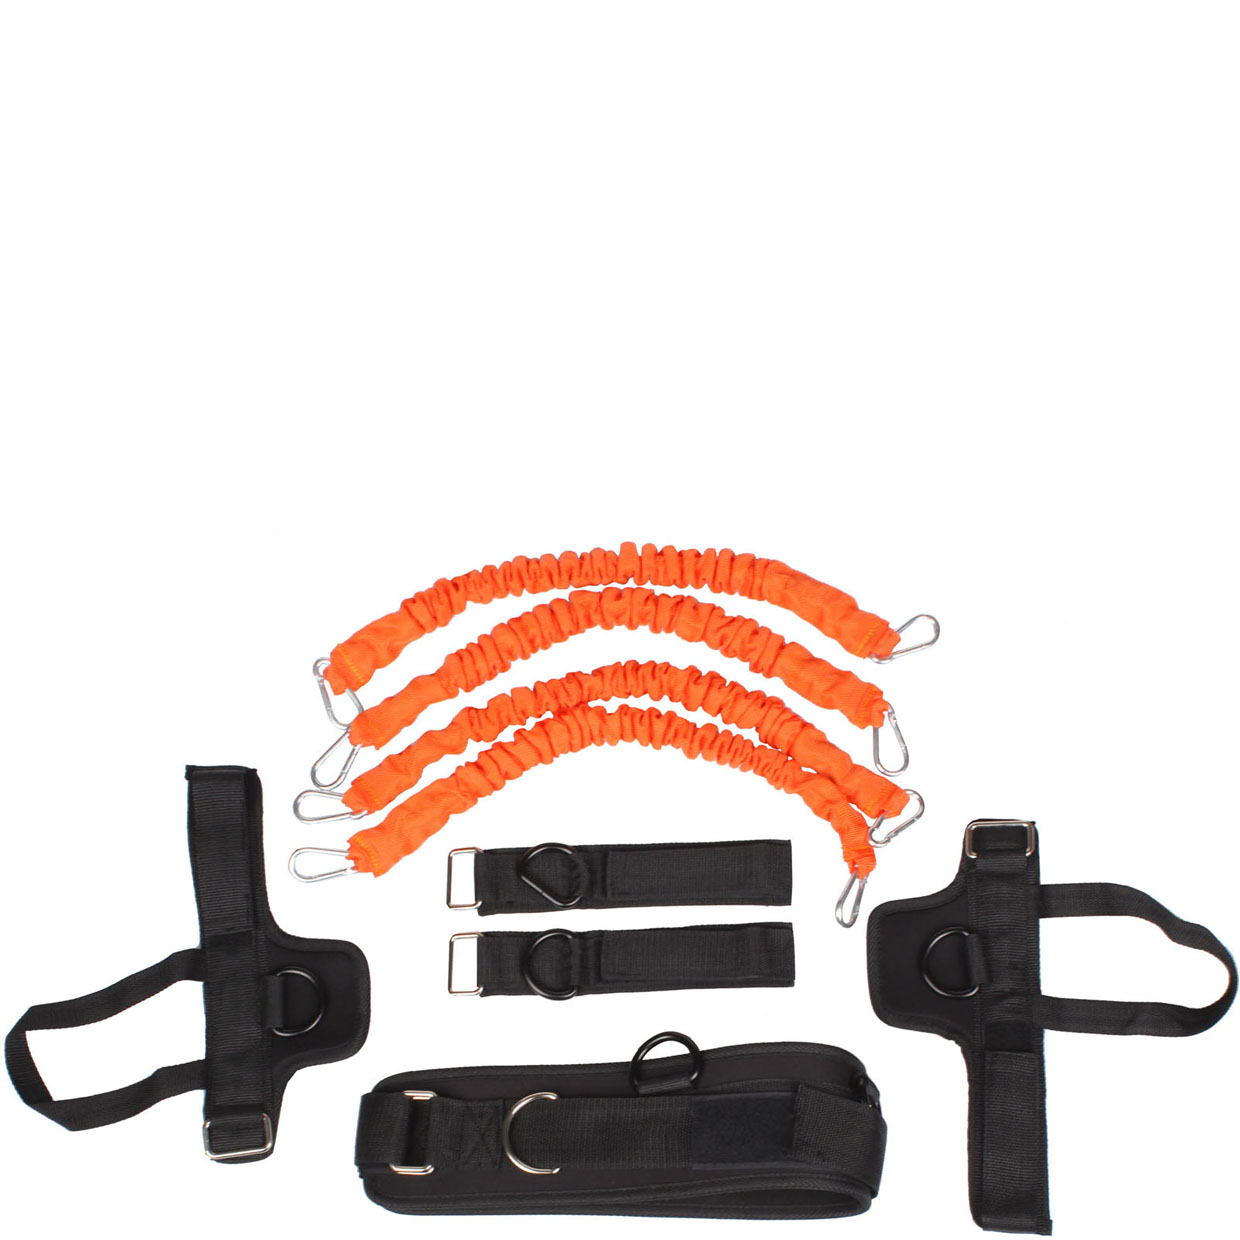 Набор эспандеров Liveup Training Kit оранжевый, 8 шт.